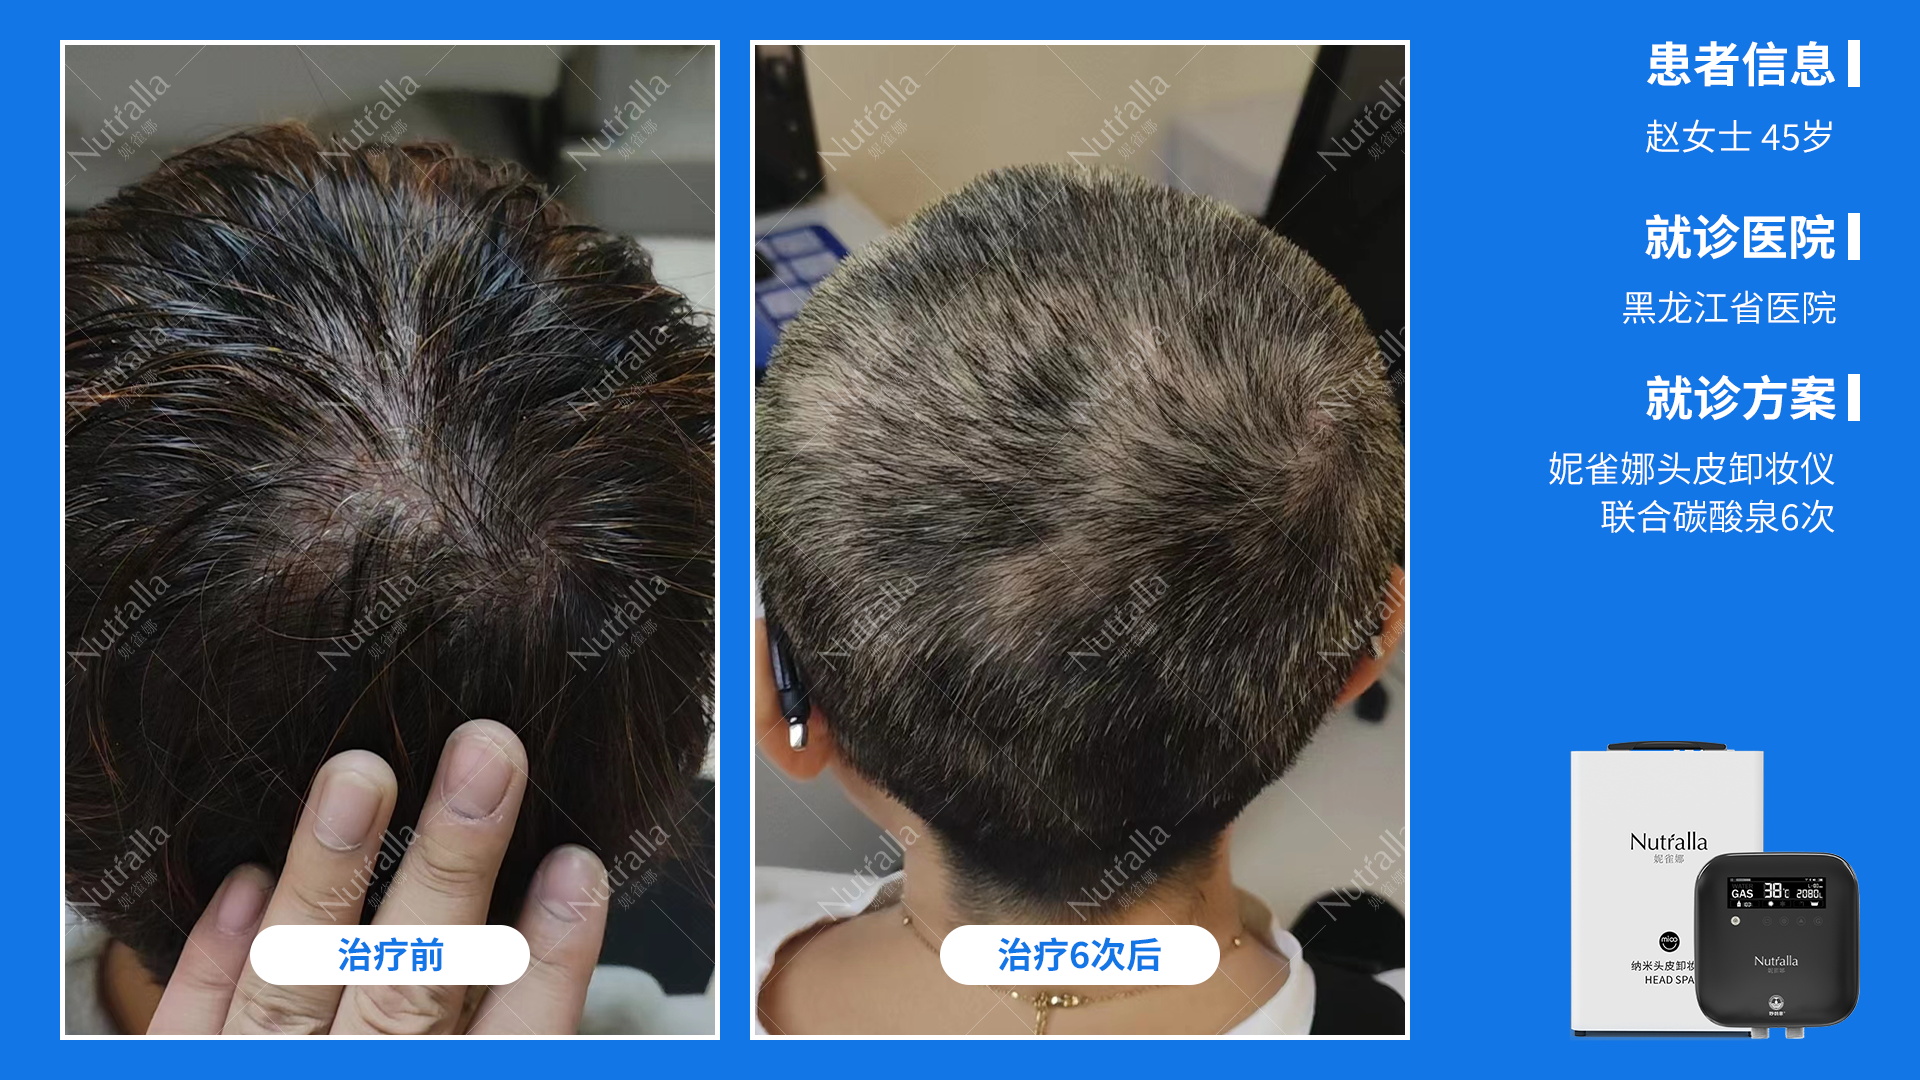 黑龙江省医院 患者 女45岁 重度脂溢性皮炎 头皮卸妆仪加碳酸泉治疗6次